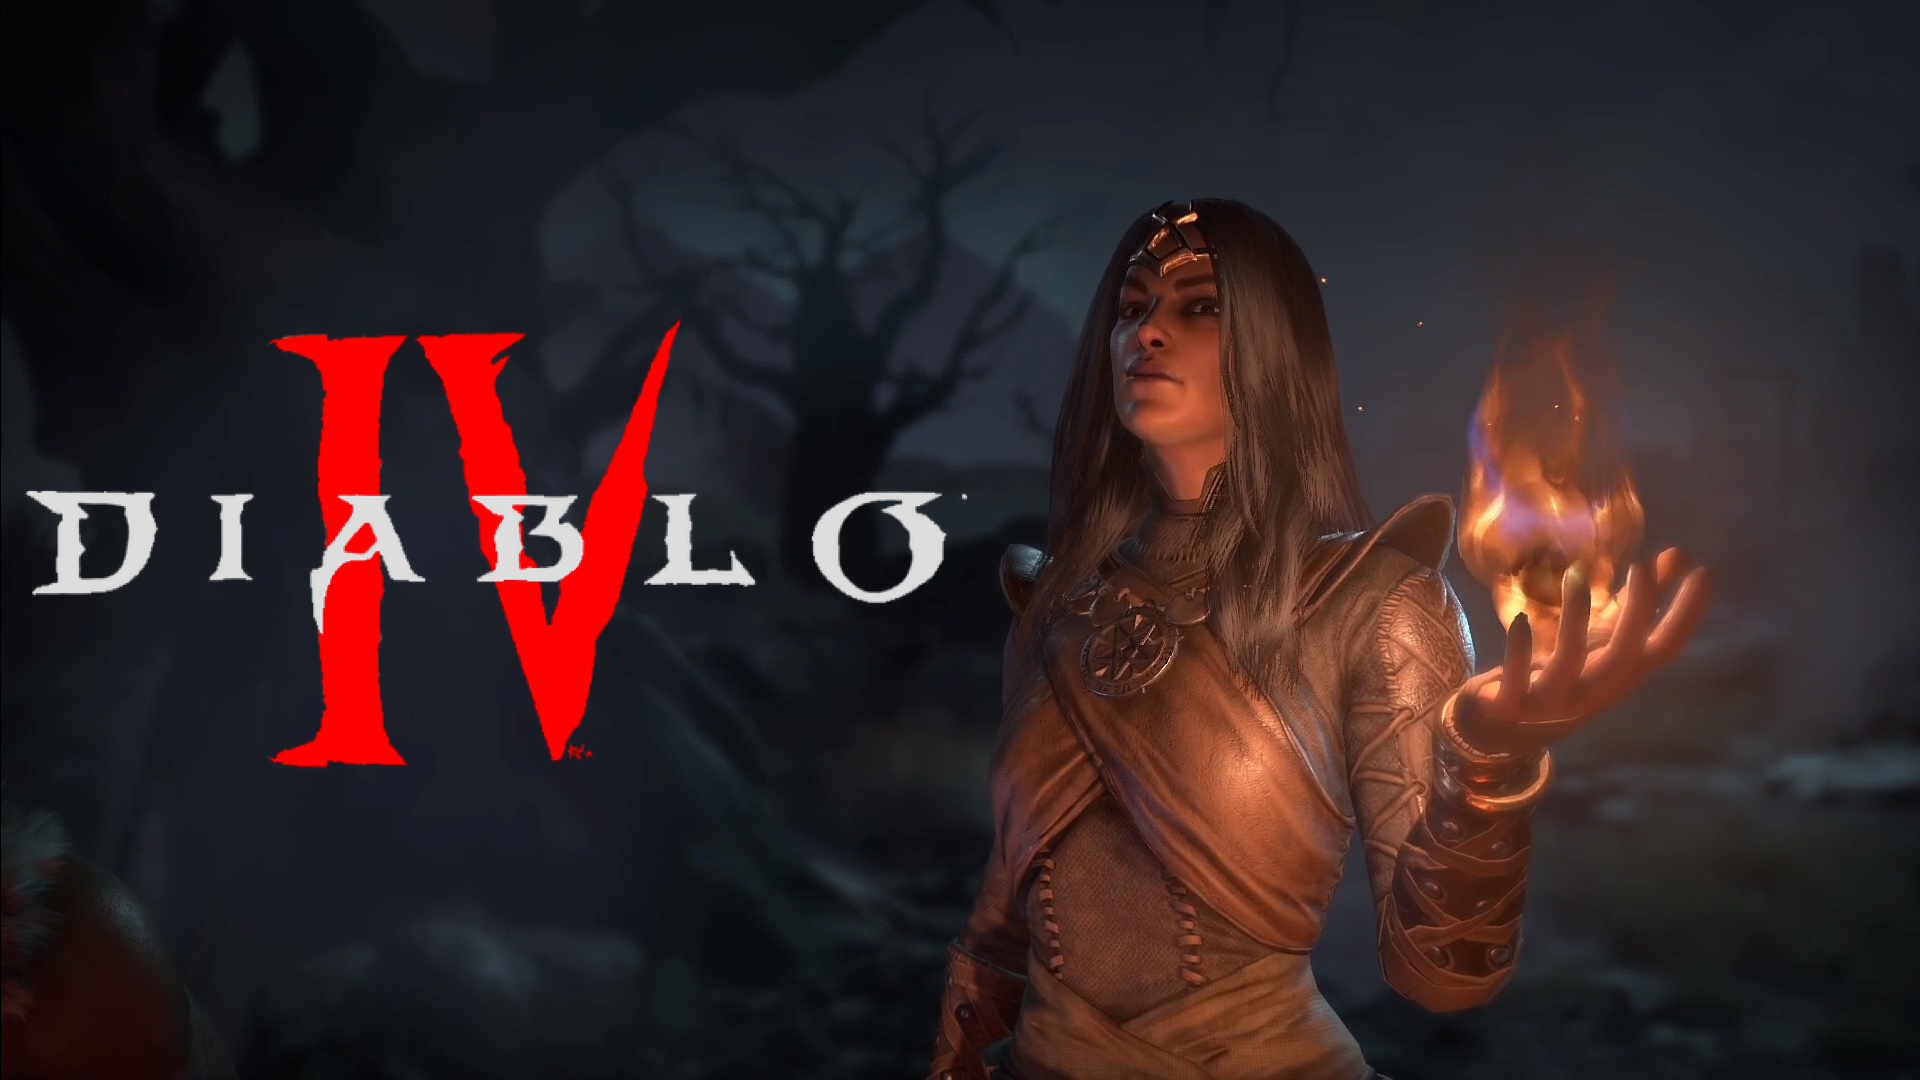 I-Diablo 4